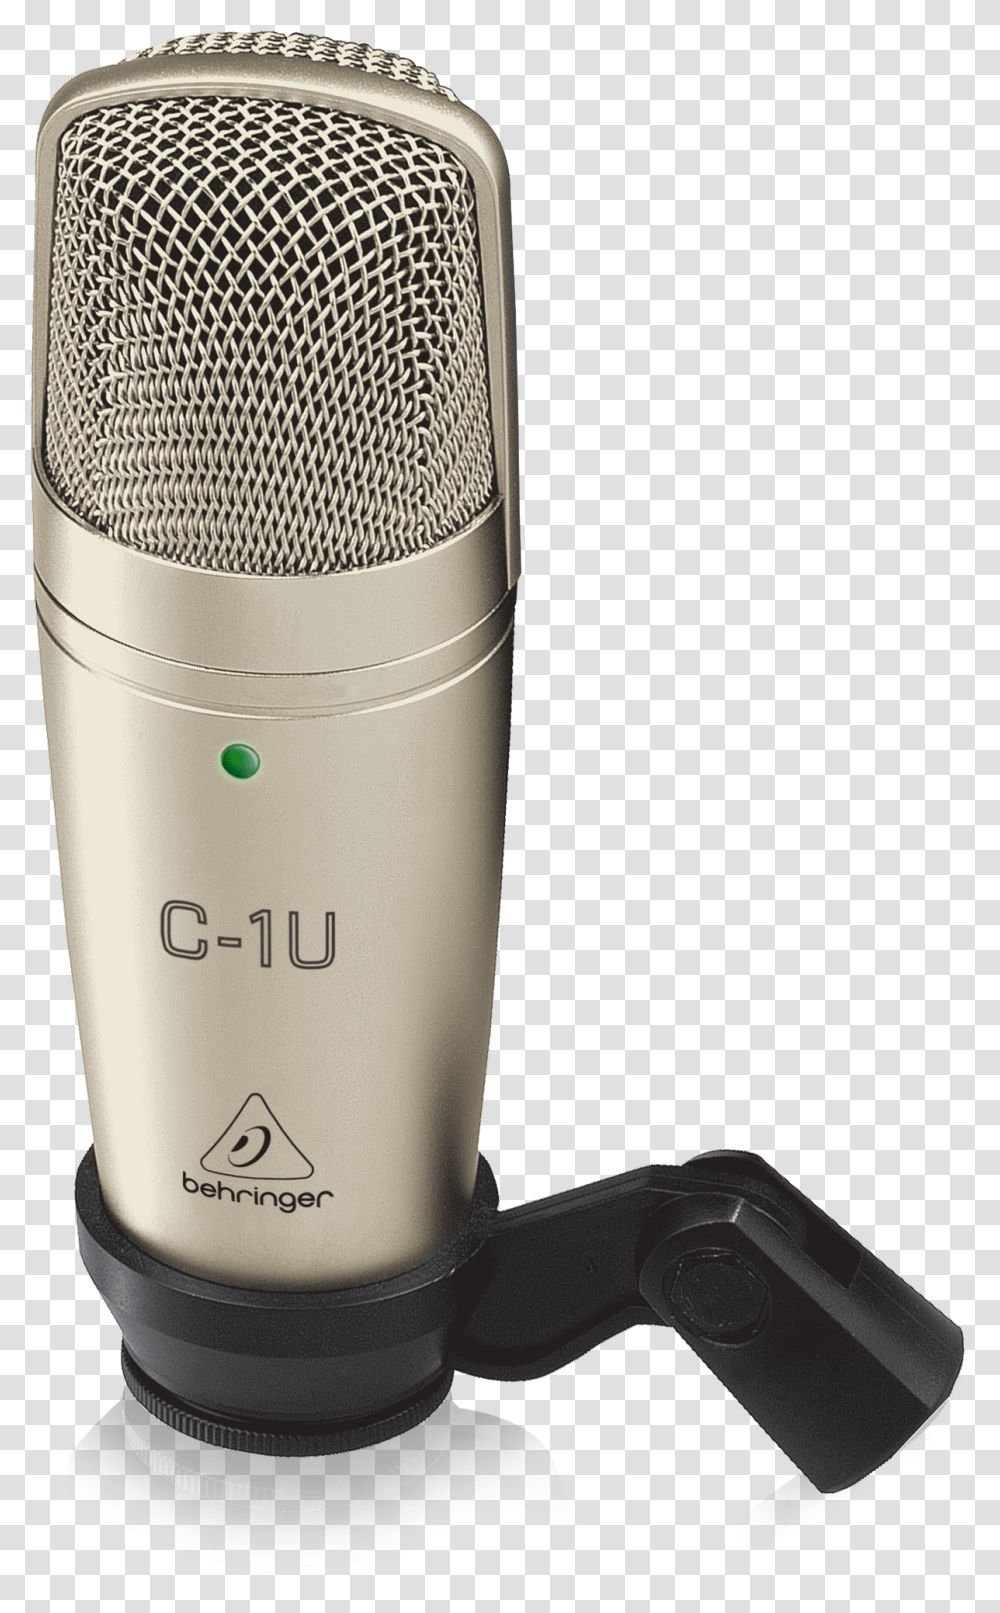 Behringer Product C 1u Behringer C1 U, Electrical Device, Microphone, Cylinder Transparent Png